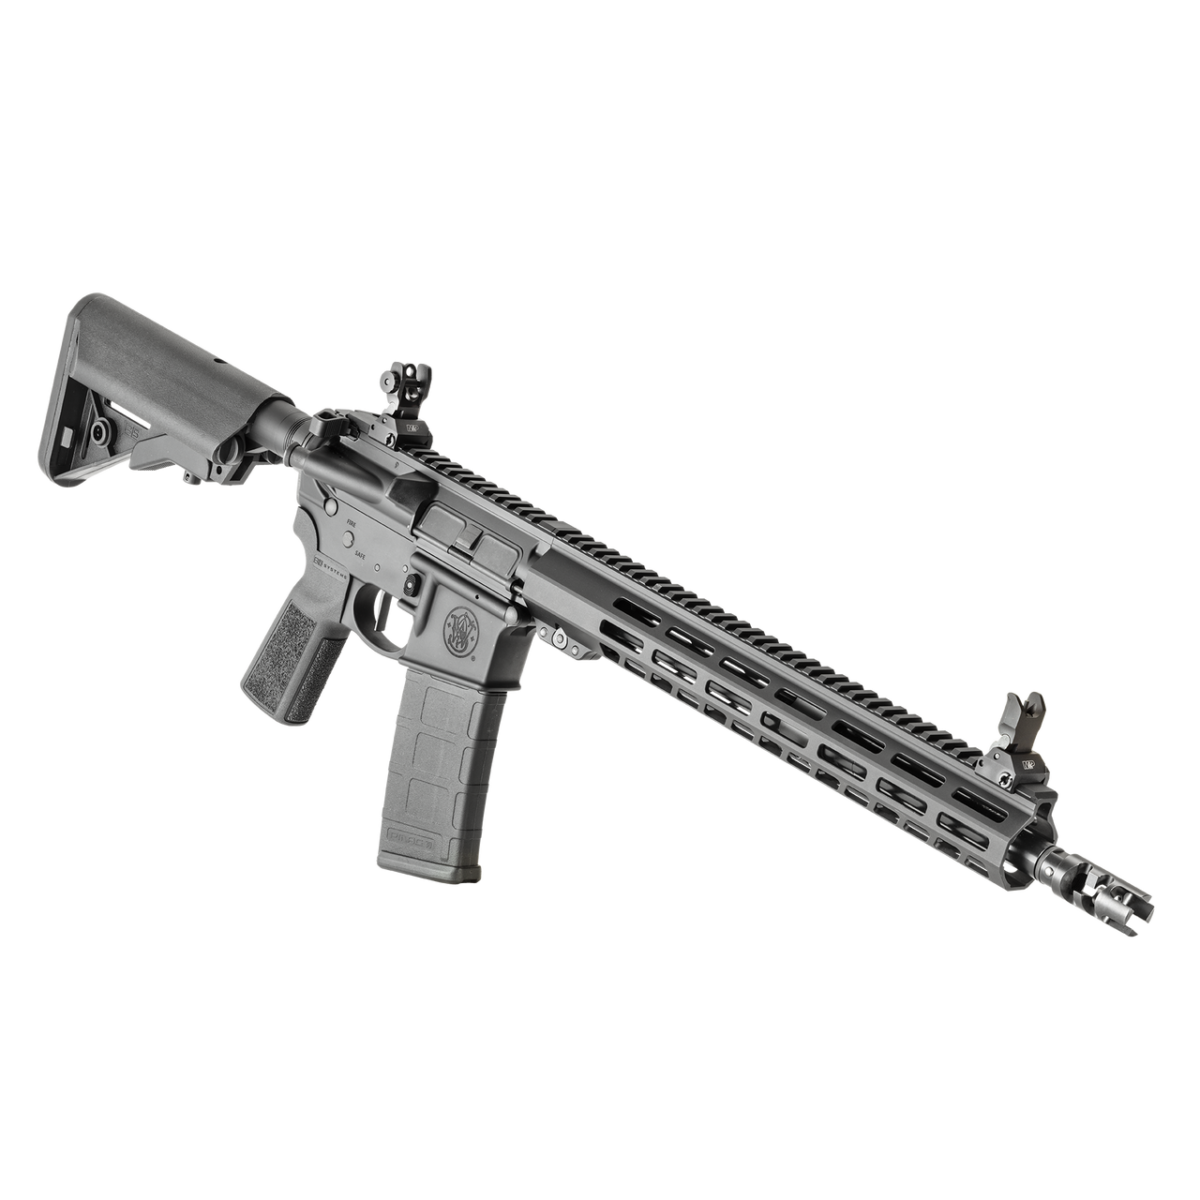 Buy Smith & Wesson Volunteer XC Pro 14.5IN Barrel Long Gun Online